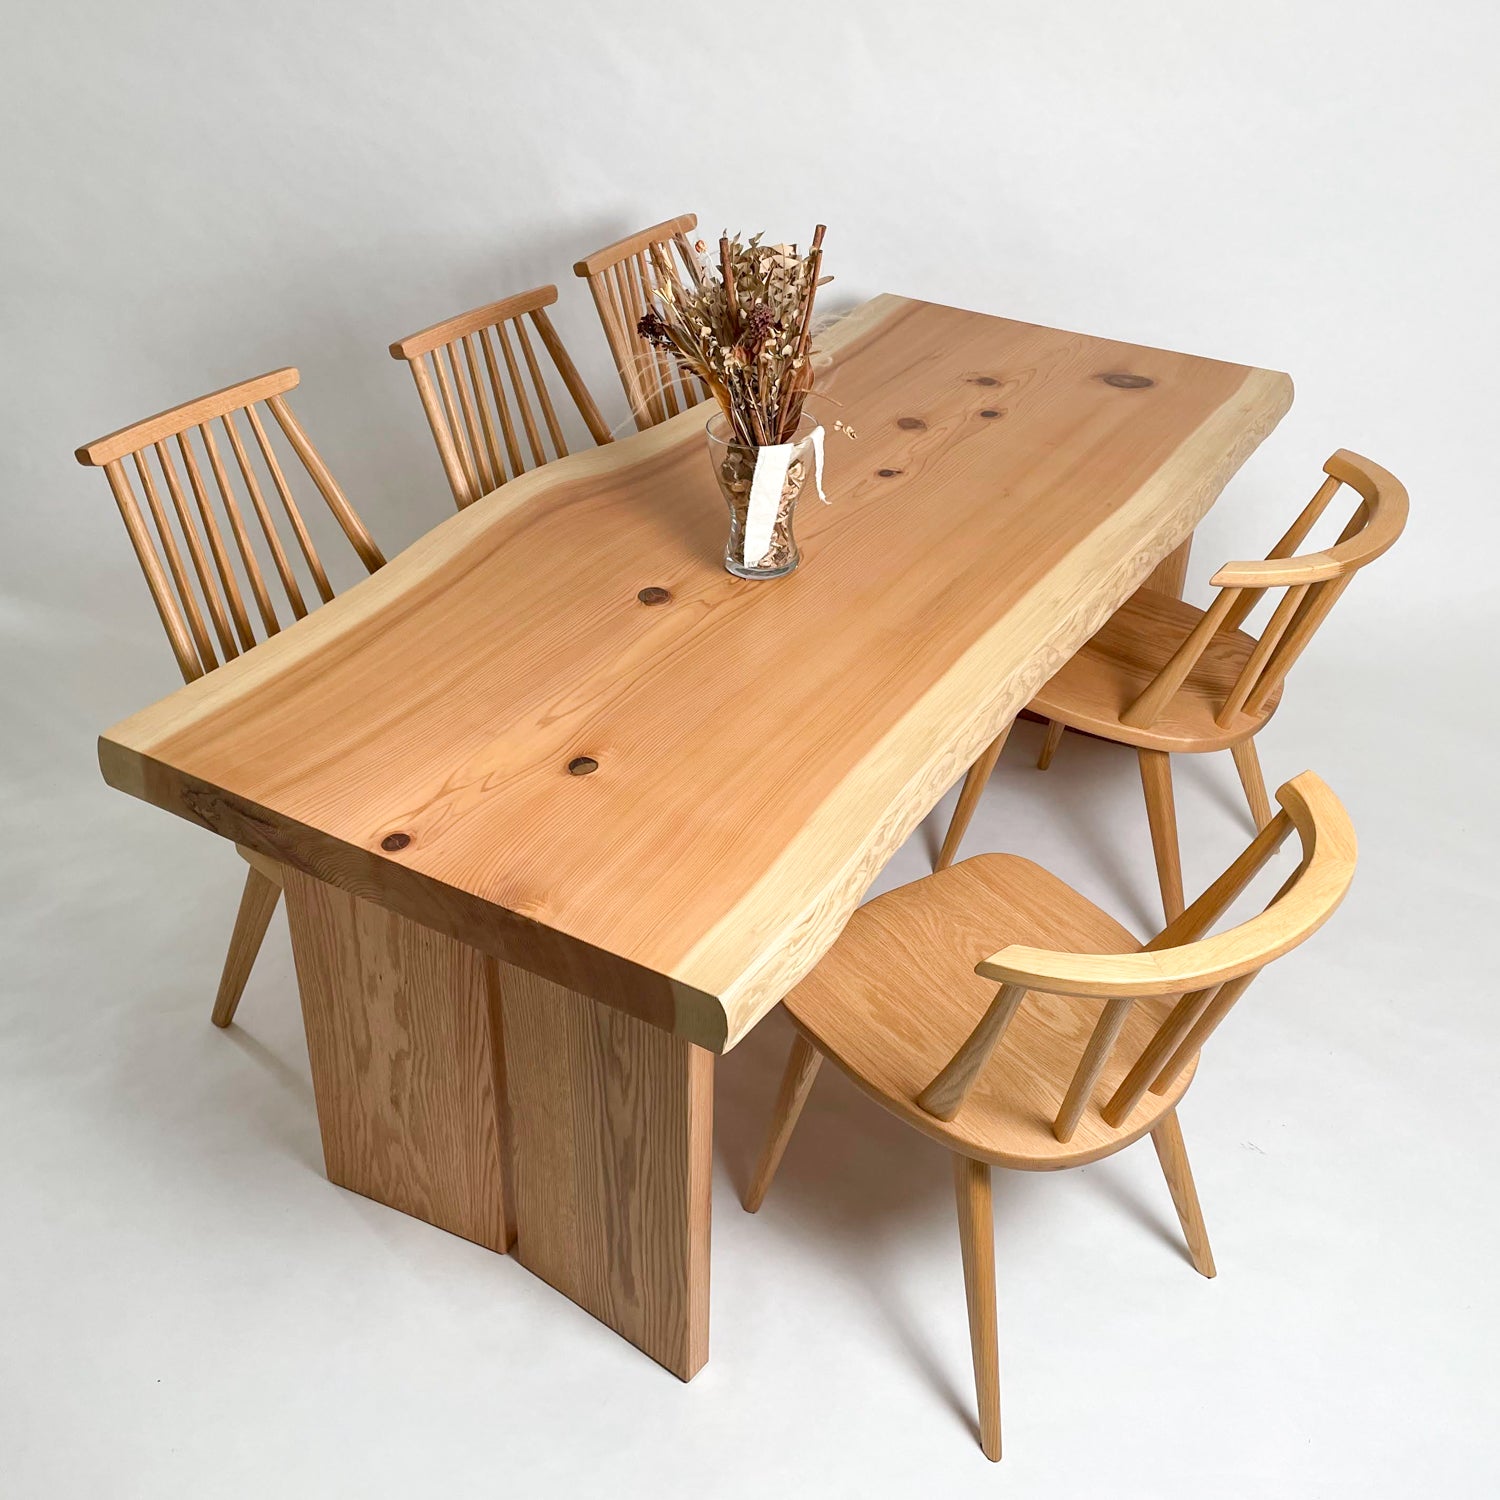 注文割引 杉 一枚板 椅子 テーブル サイドテーブル・ナイトテーブル 